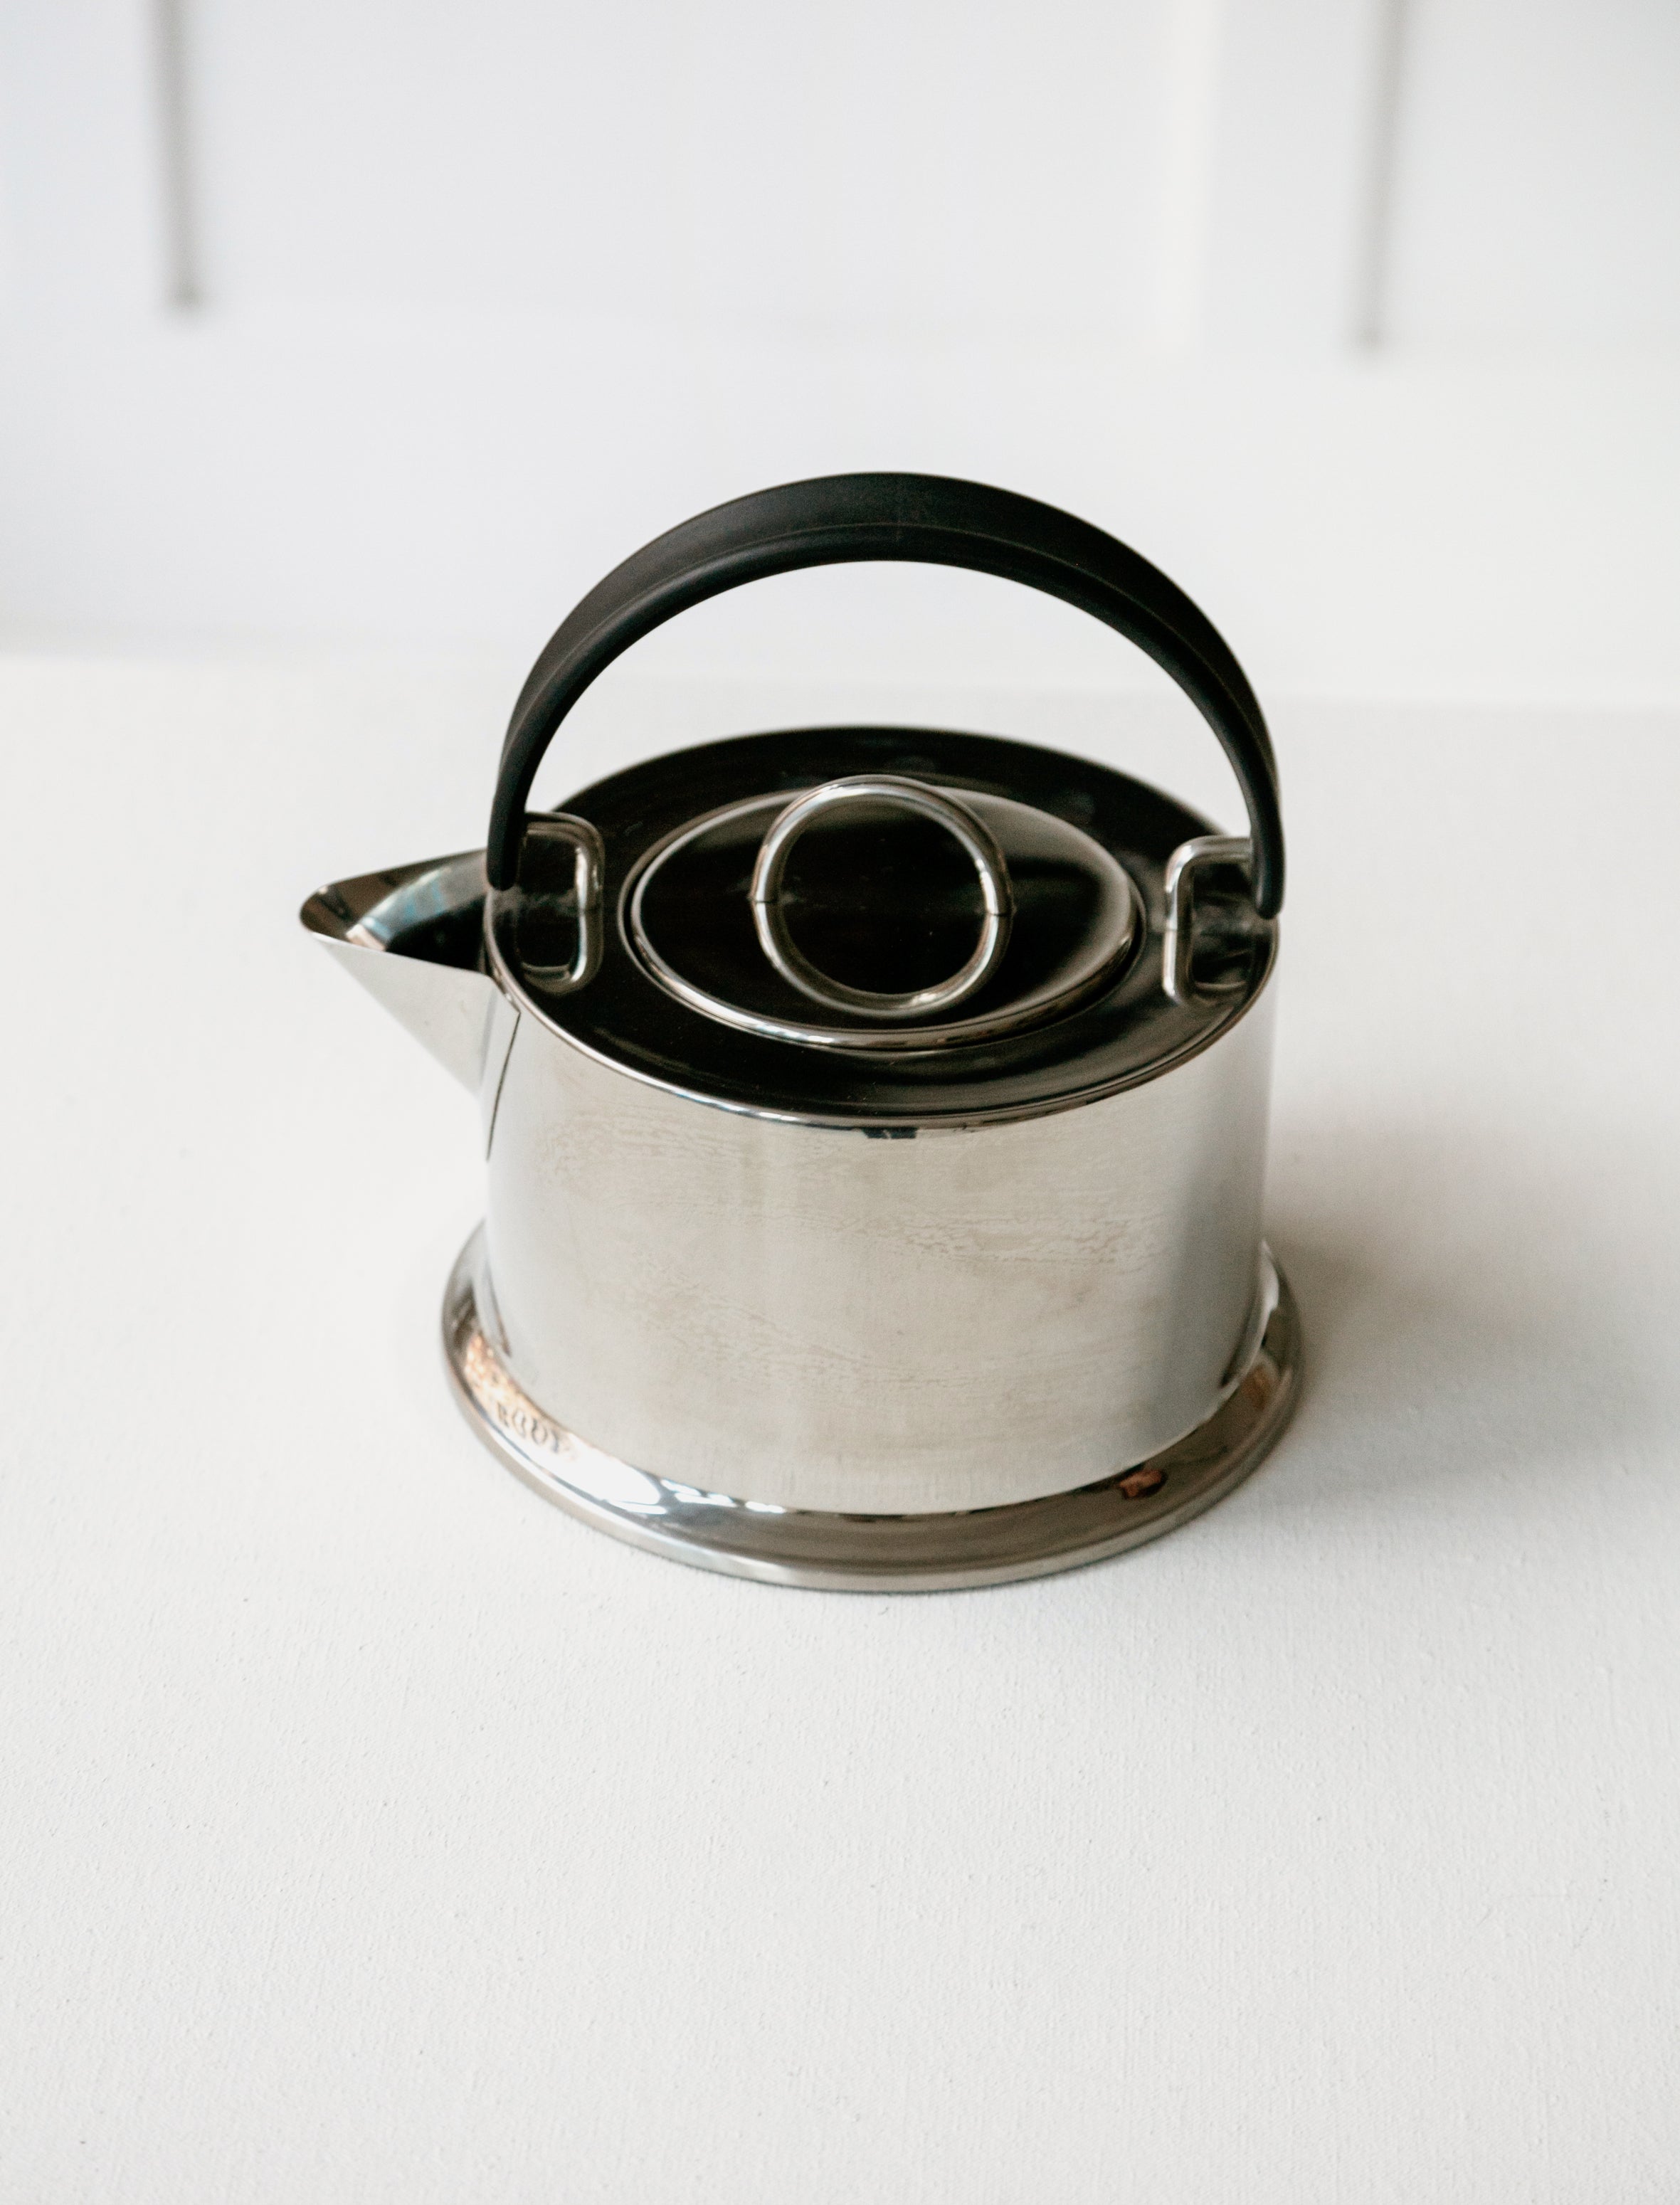 C. Jorgensen for Bodum Stainless Steel Tea Kettle 